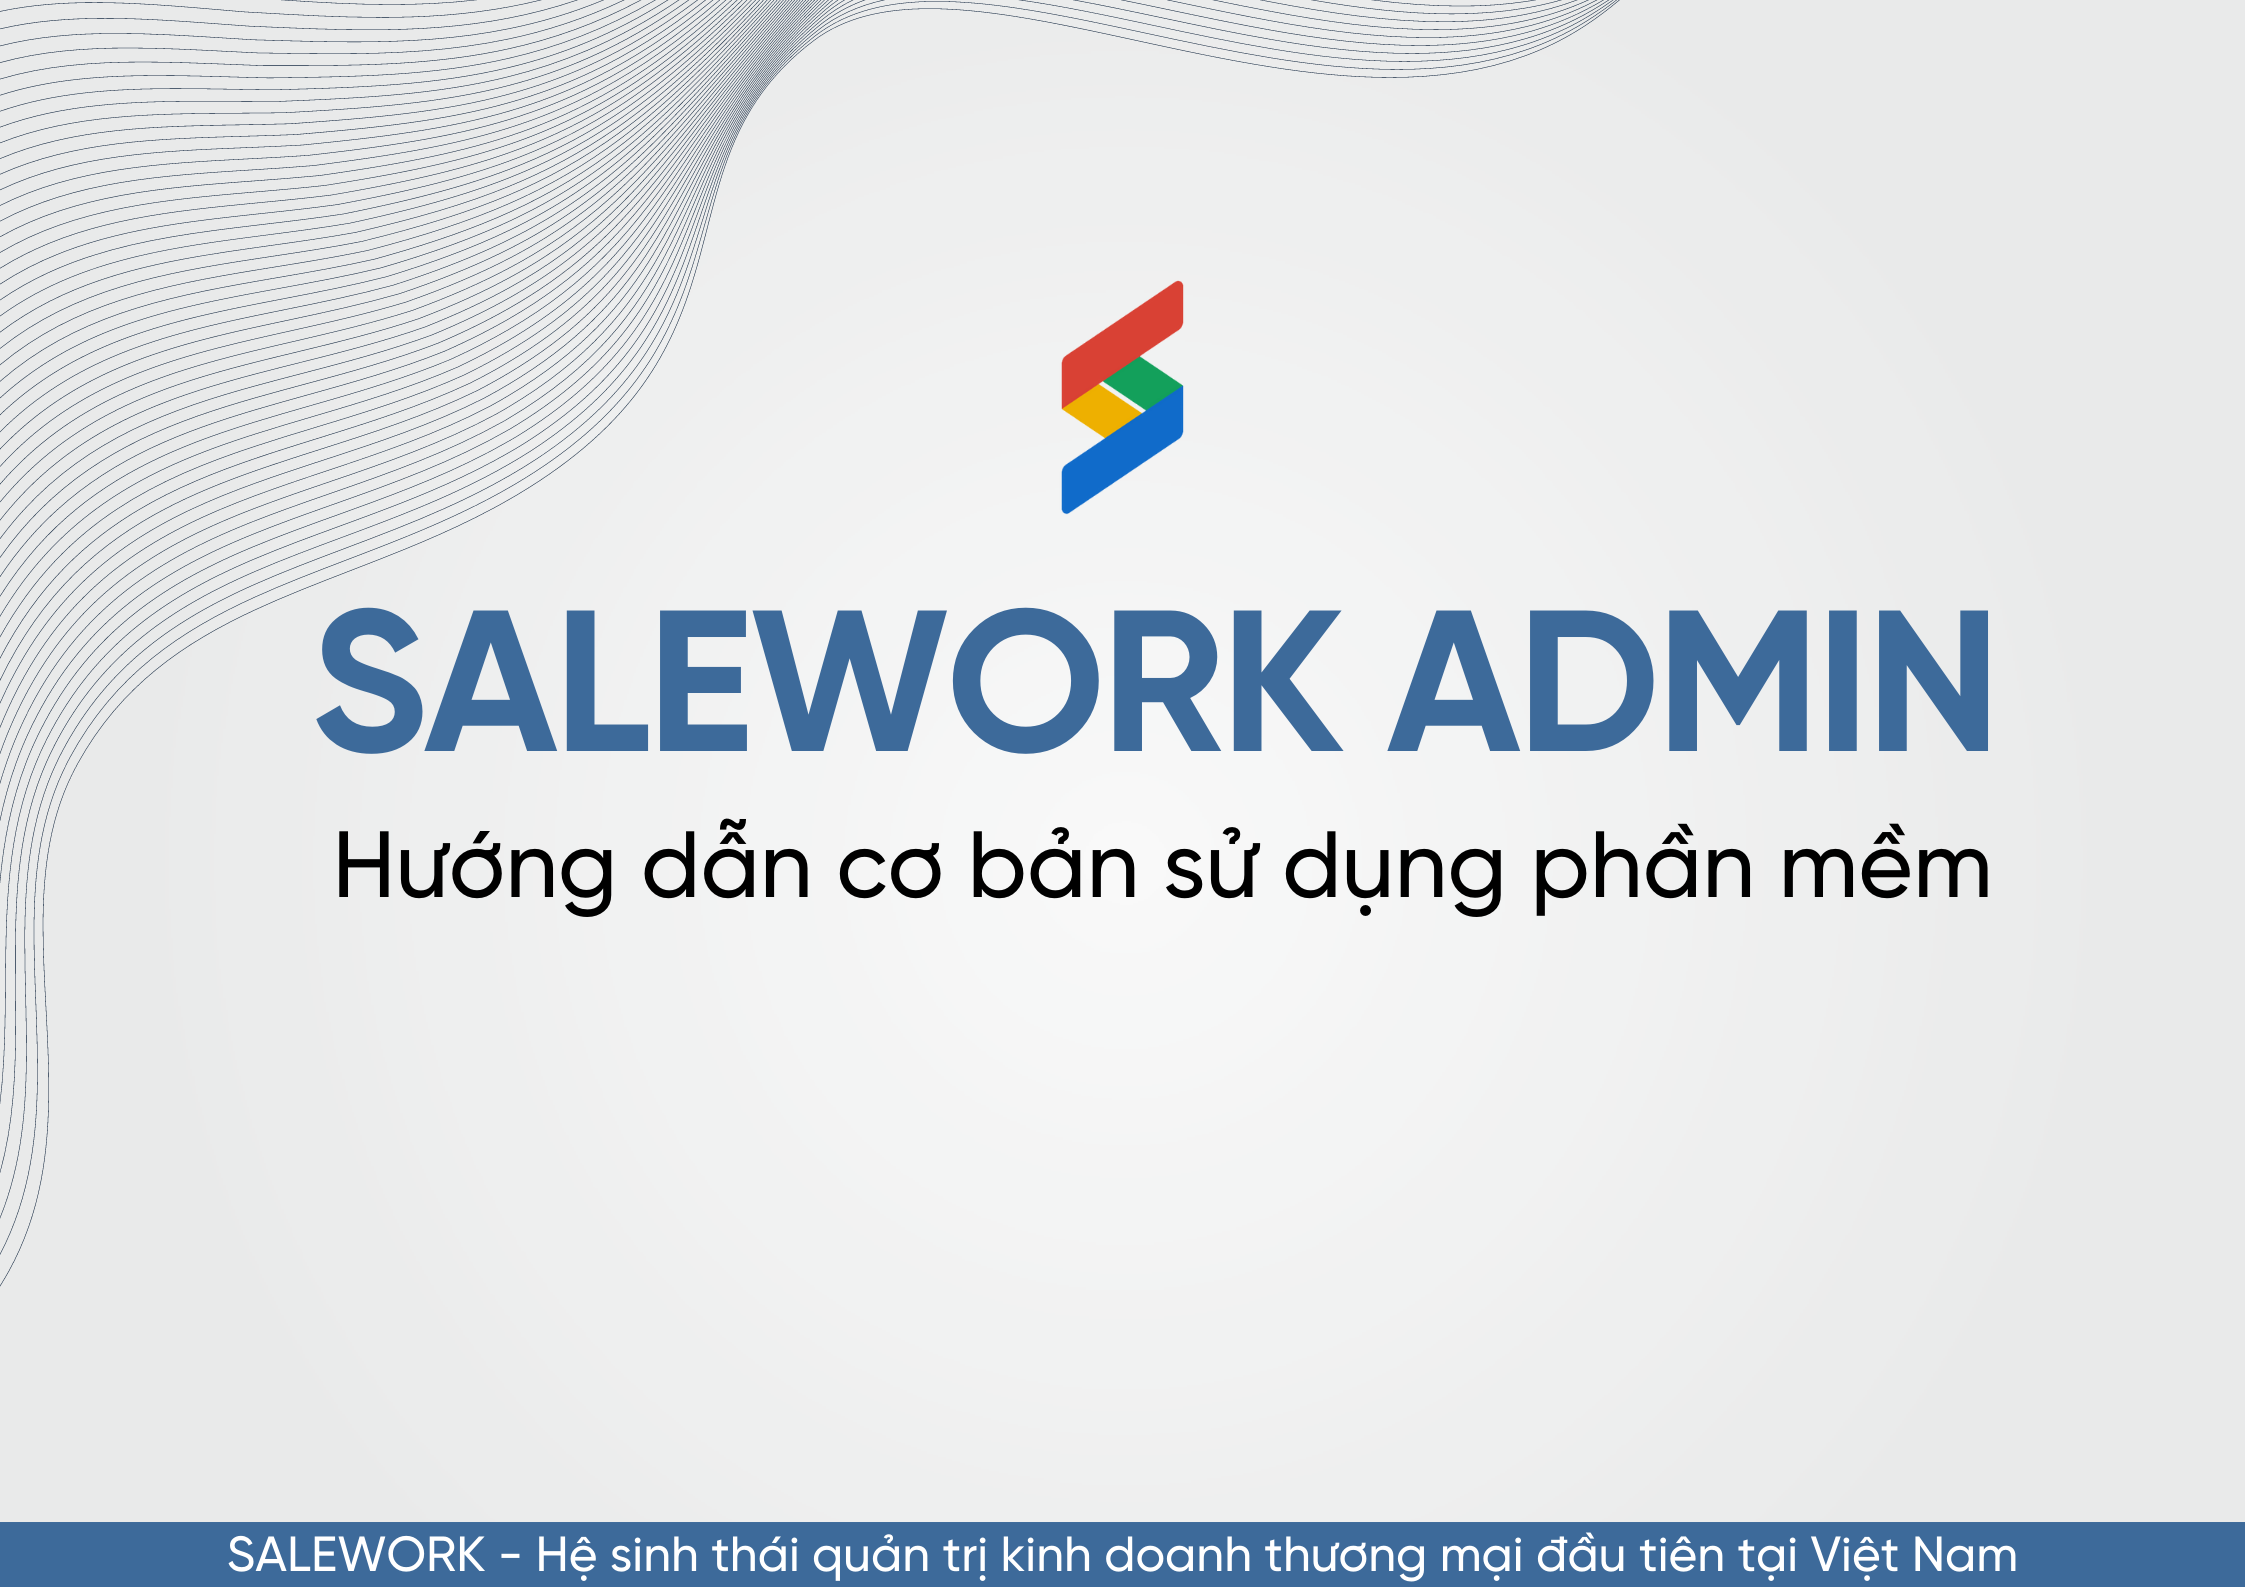 Salework Admin là gì? Hướng dẫn cơ bản sử dụng Salework Admin - 13